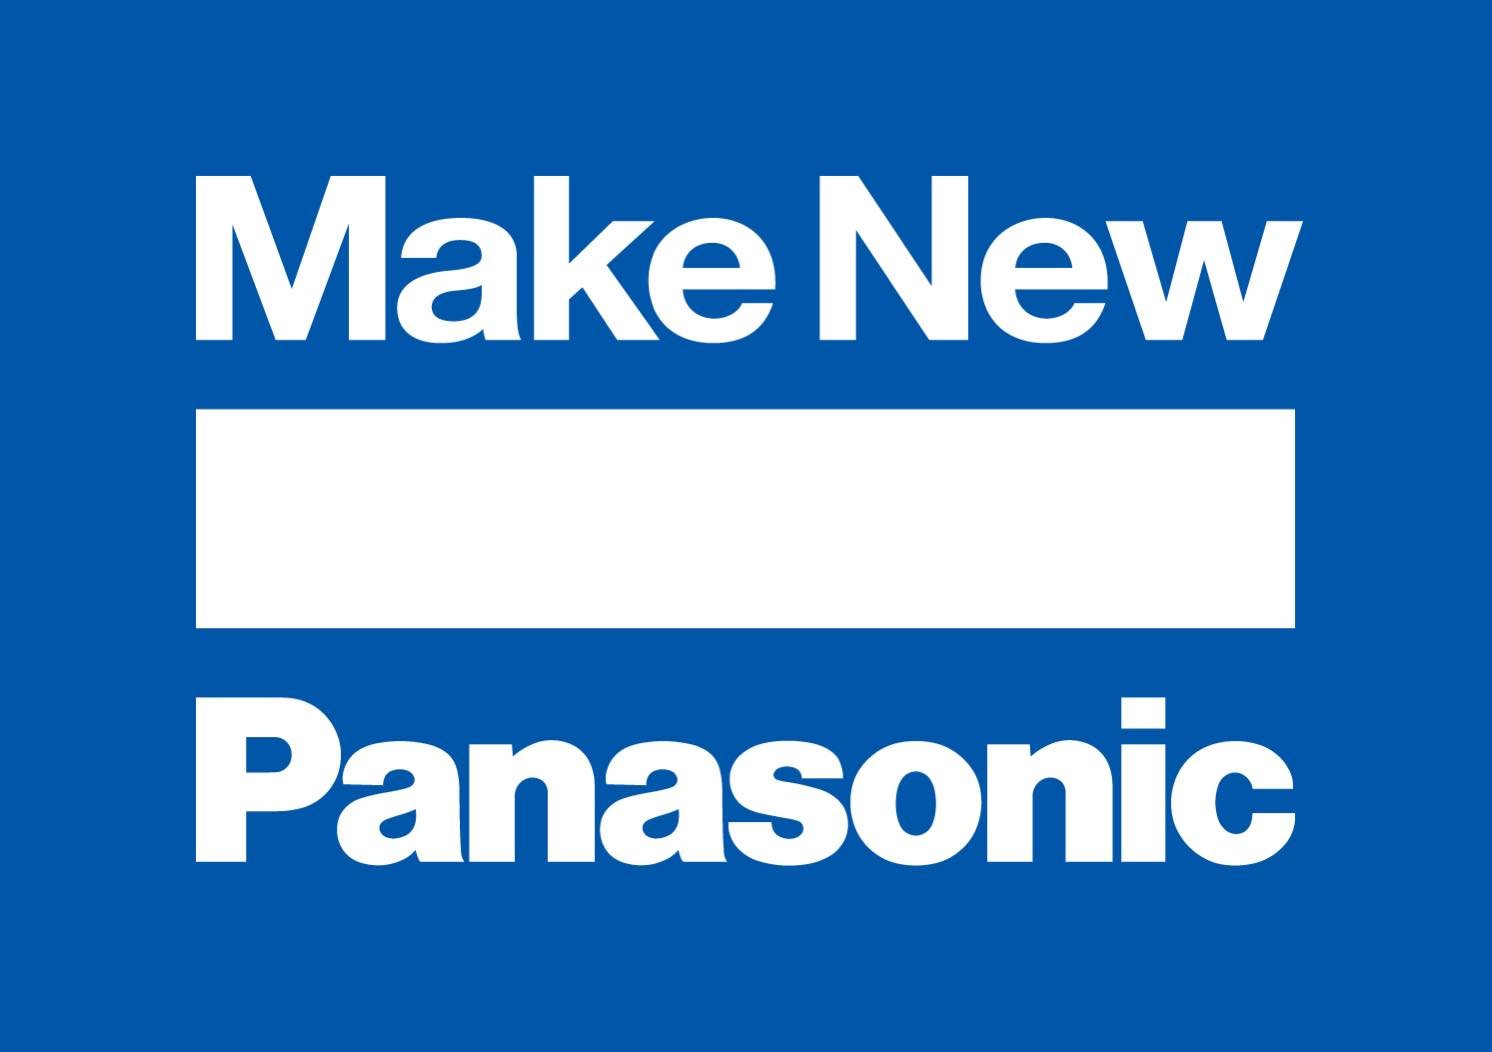 パナソニックの新たなアクションワード「Make New」